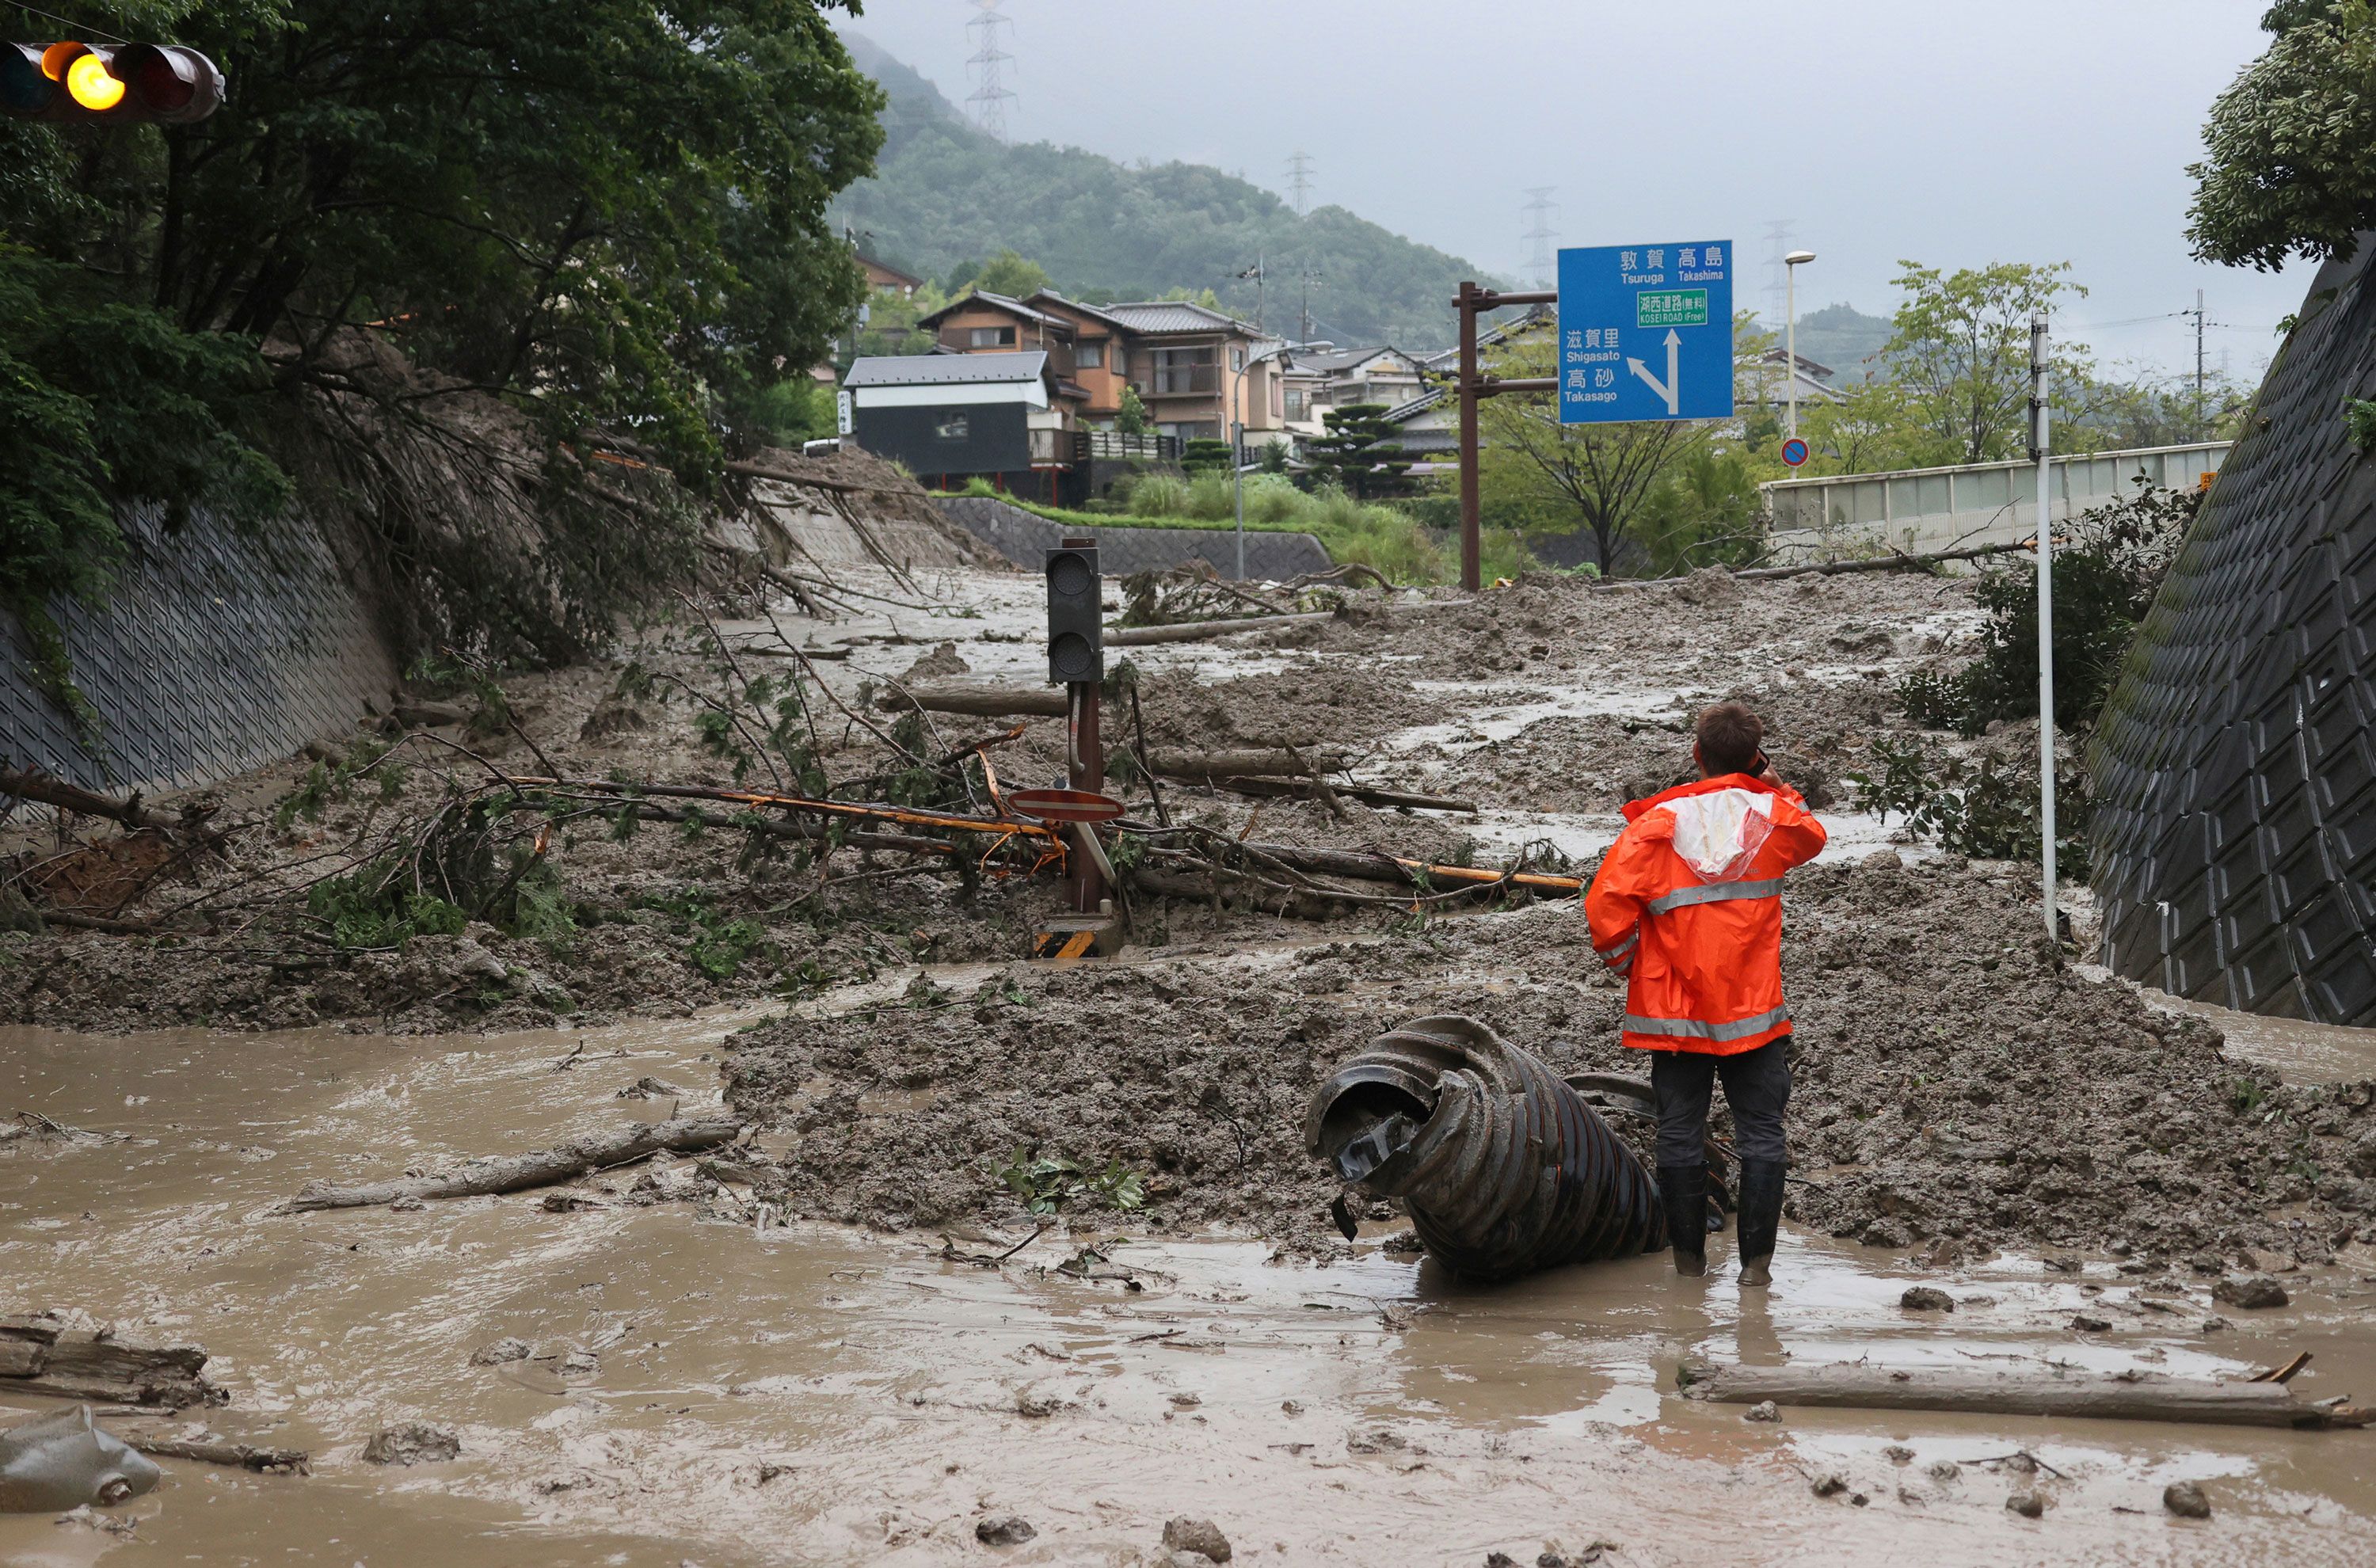 Japan Weather Agency Warns of Landslides, Floods Due to Storm